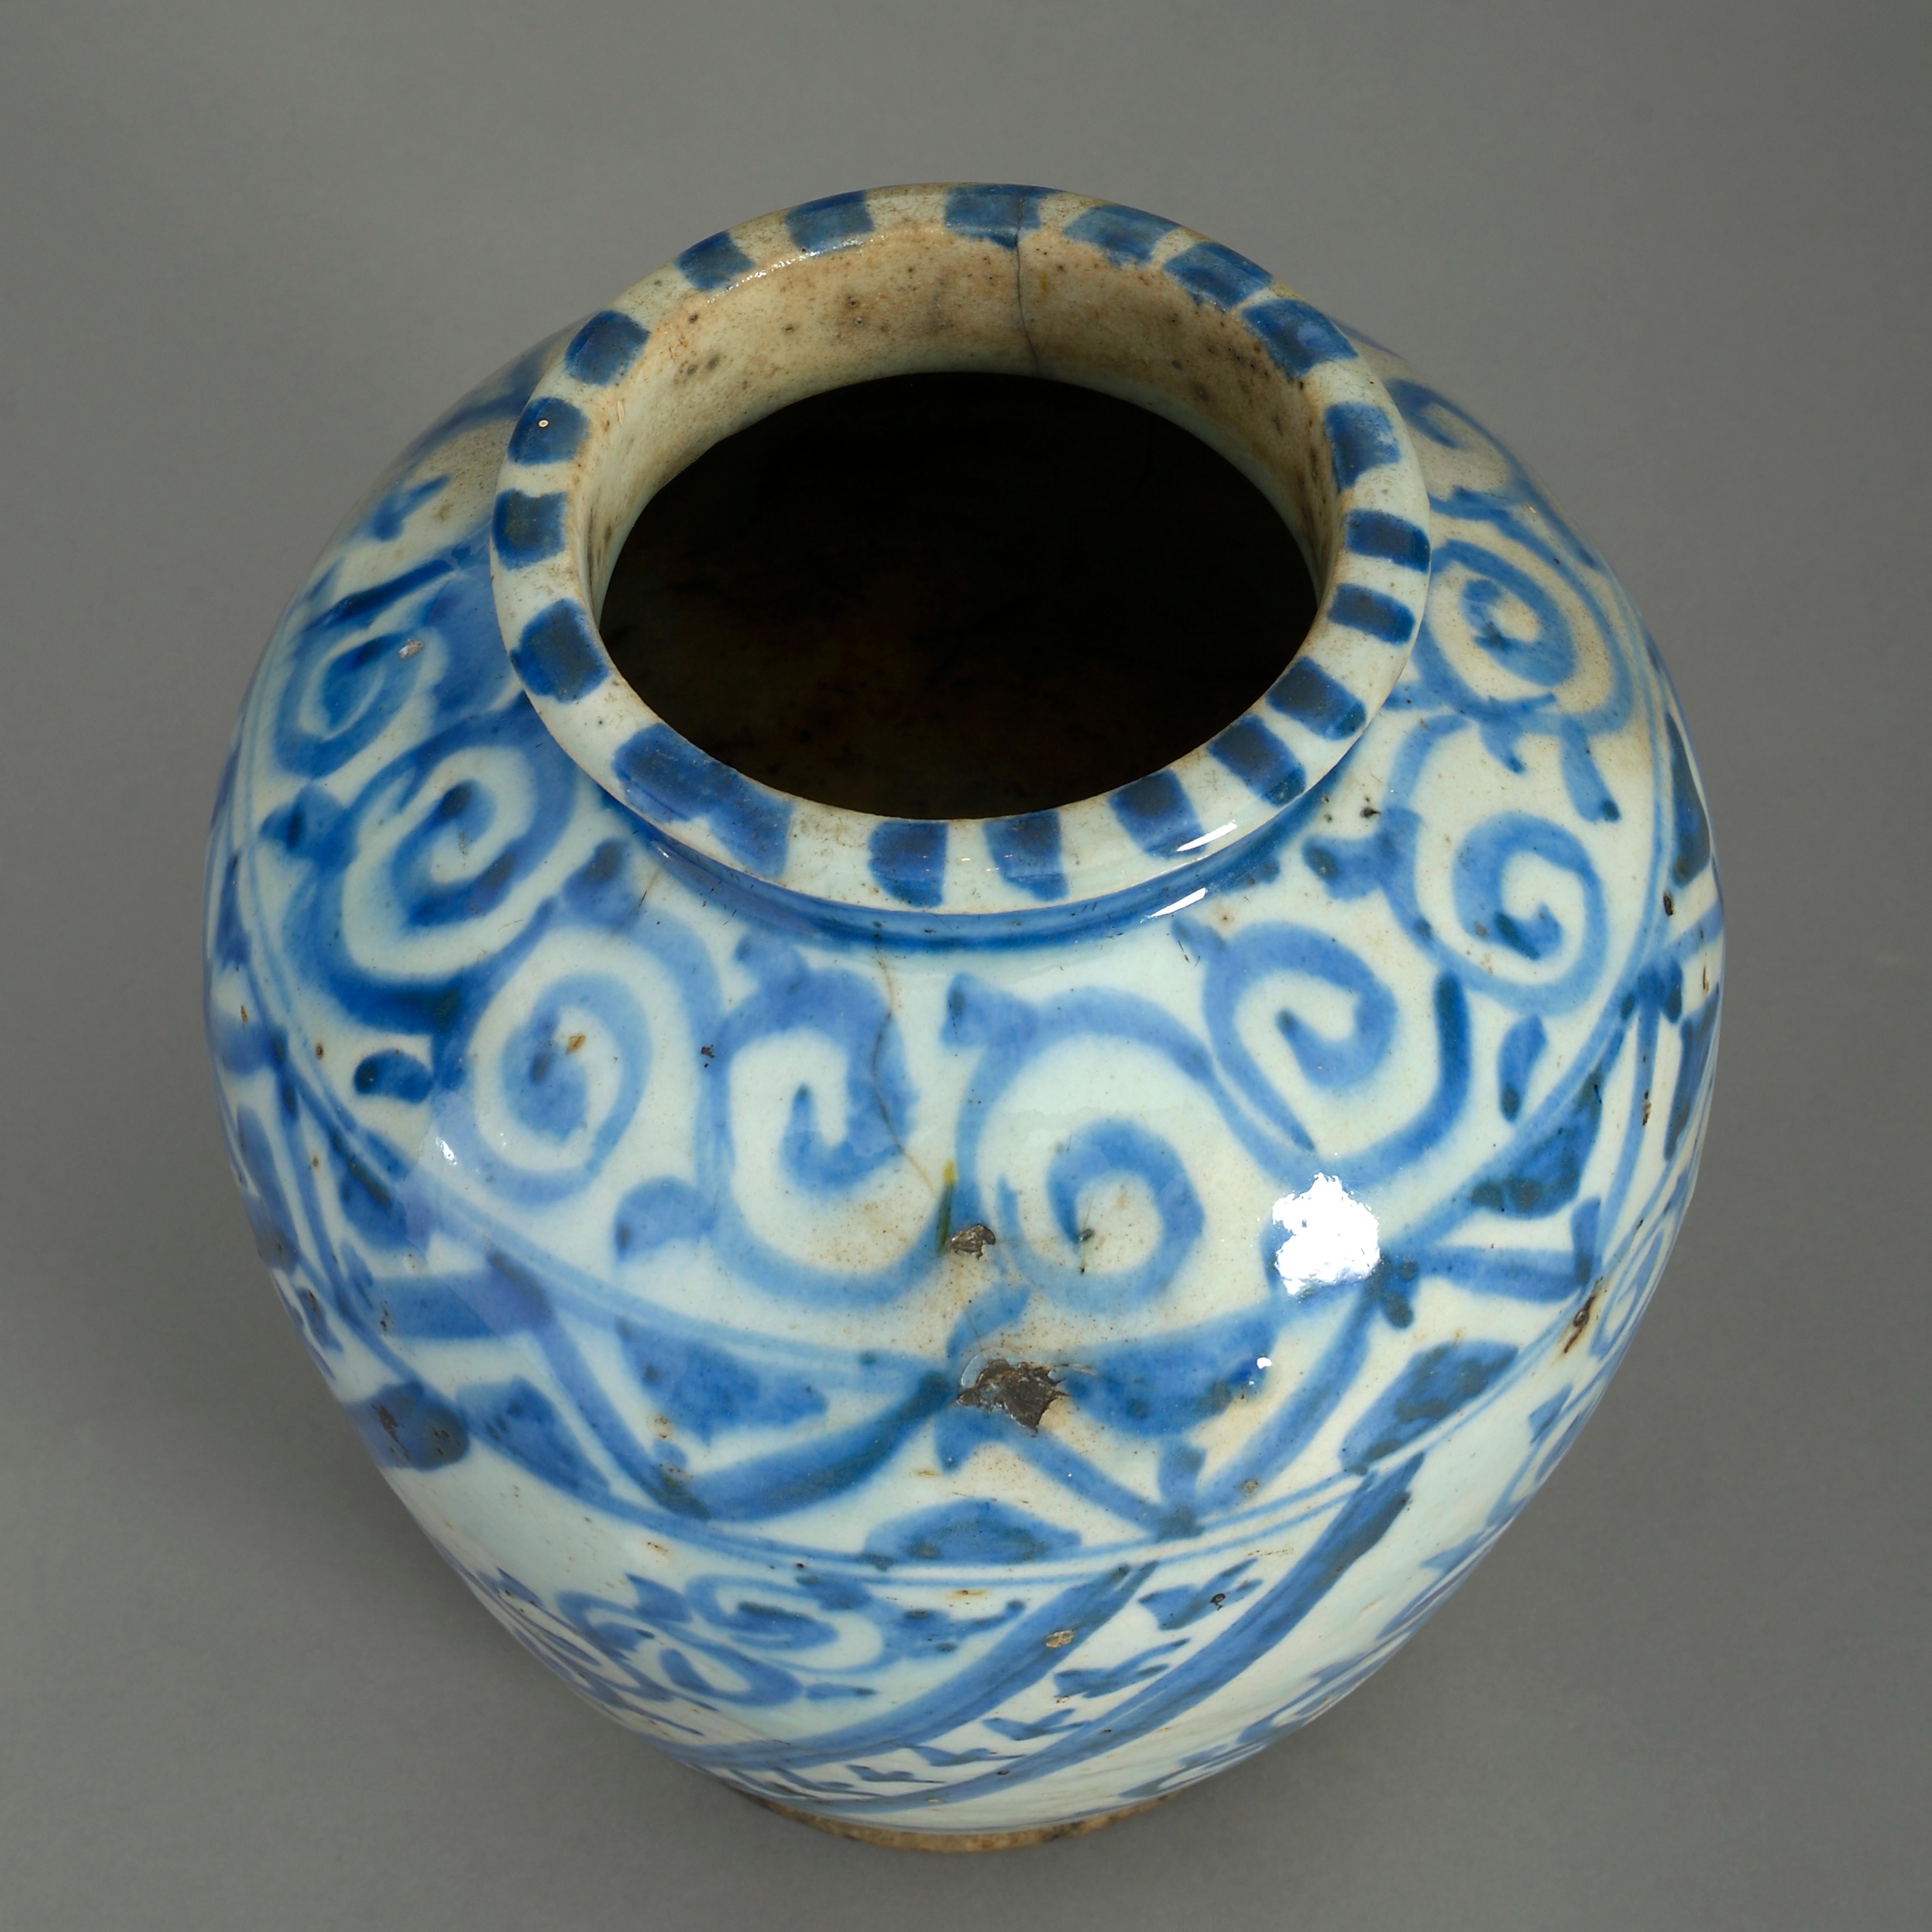 antique persian vase